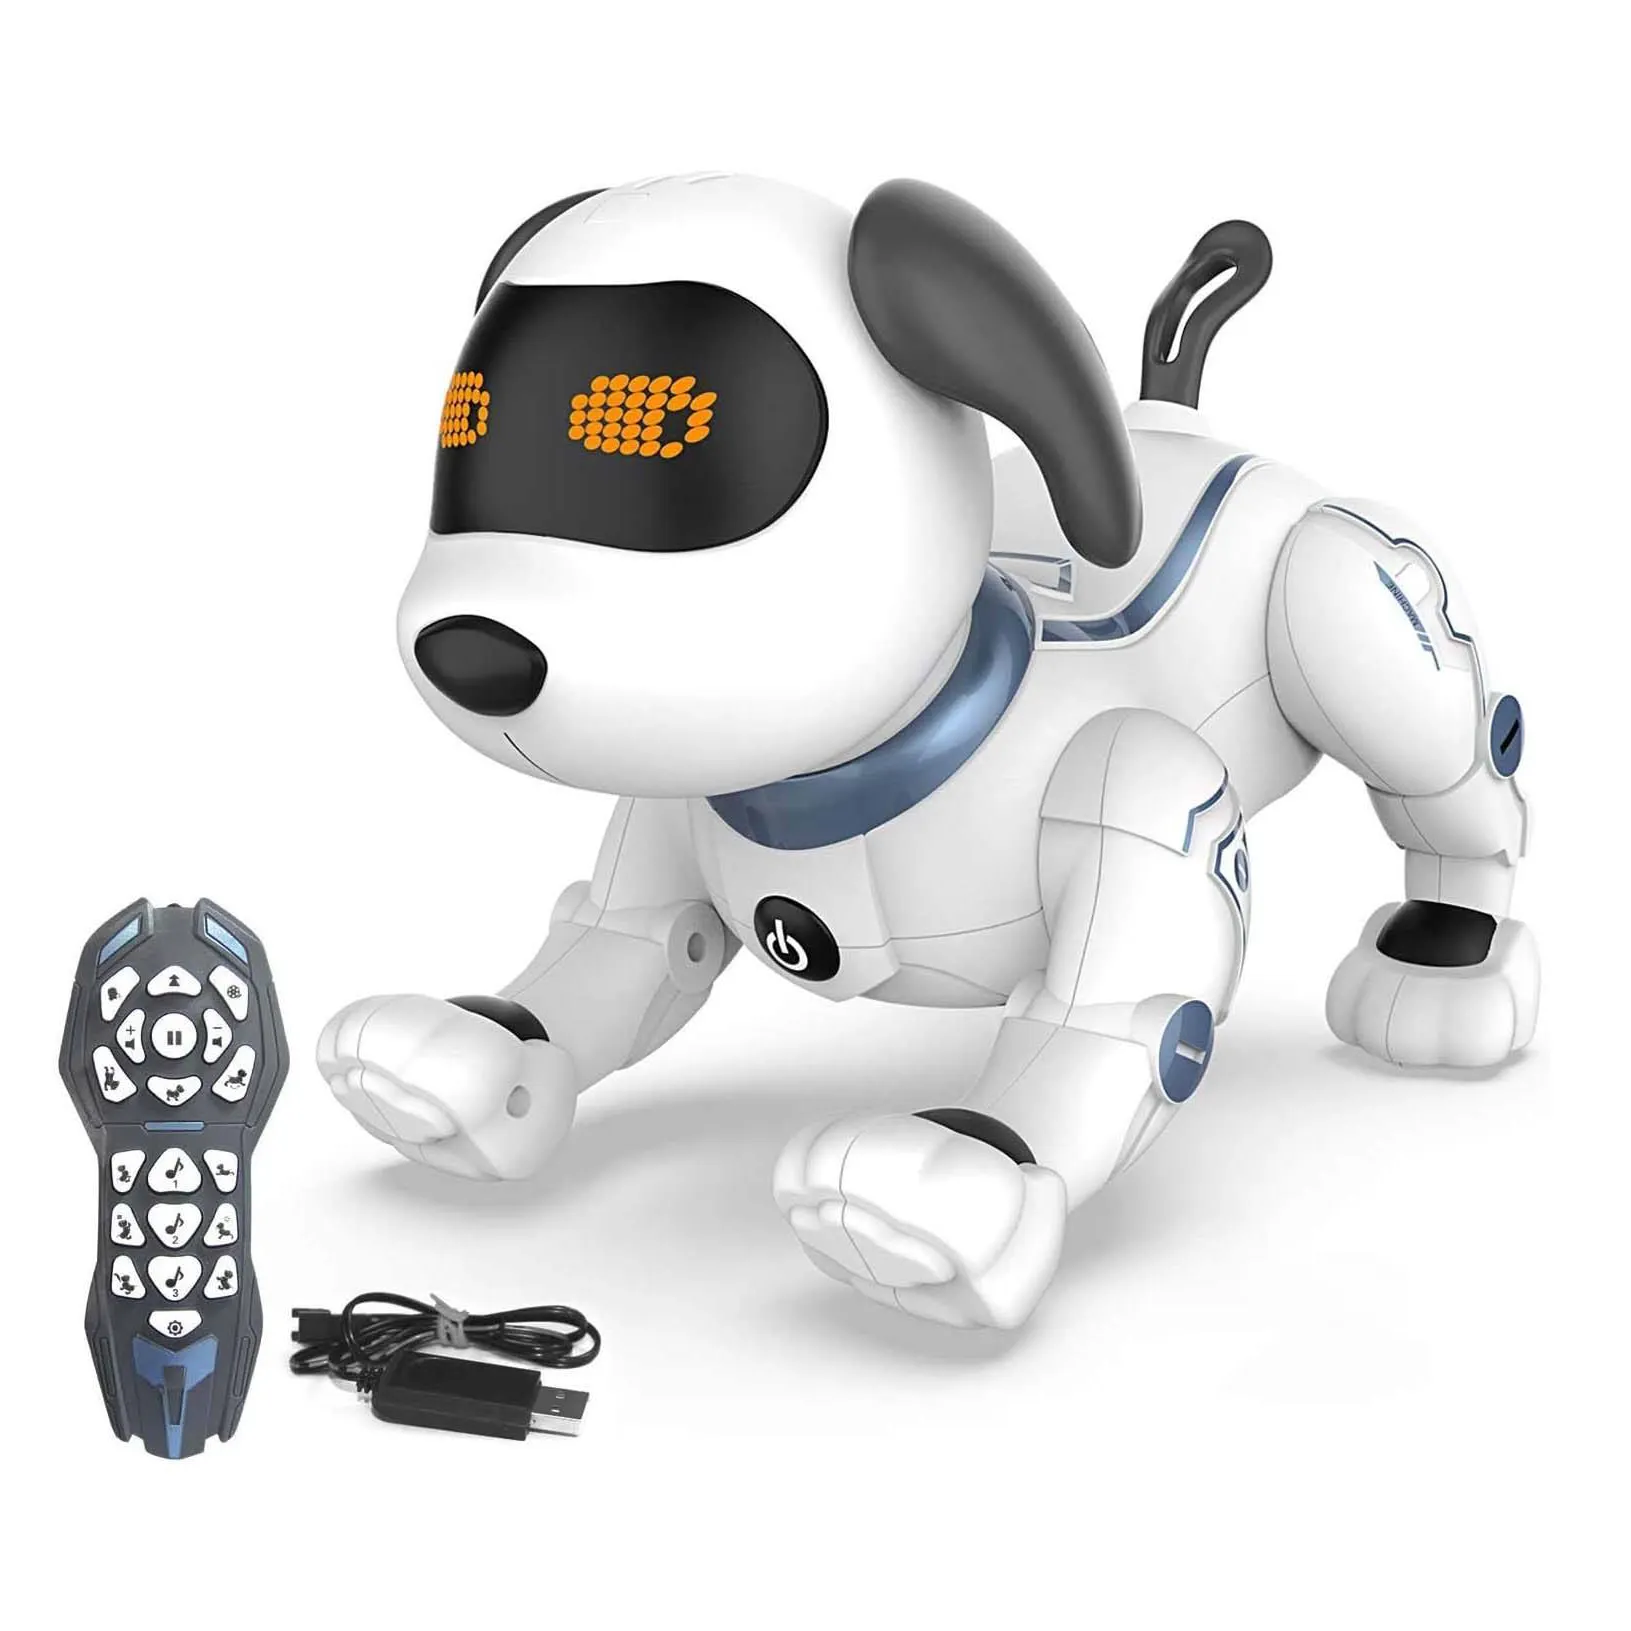 어린이를 위한 원격 제어 로봇 개, RC 스턴트 프로그래밍 가능 로봇 강아지 장난감 노래, 춤, 짖음, 산책 전자 애완 동물 개